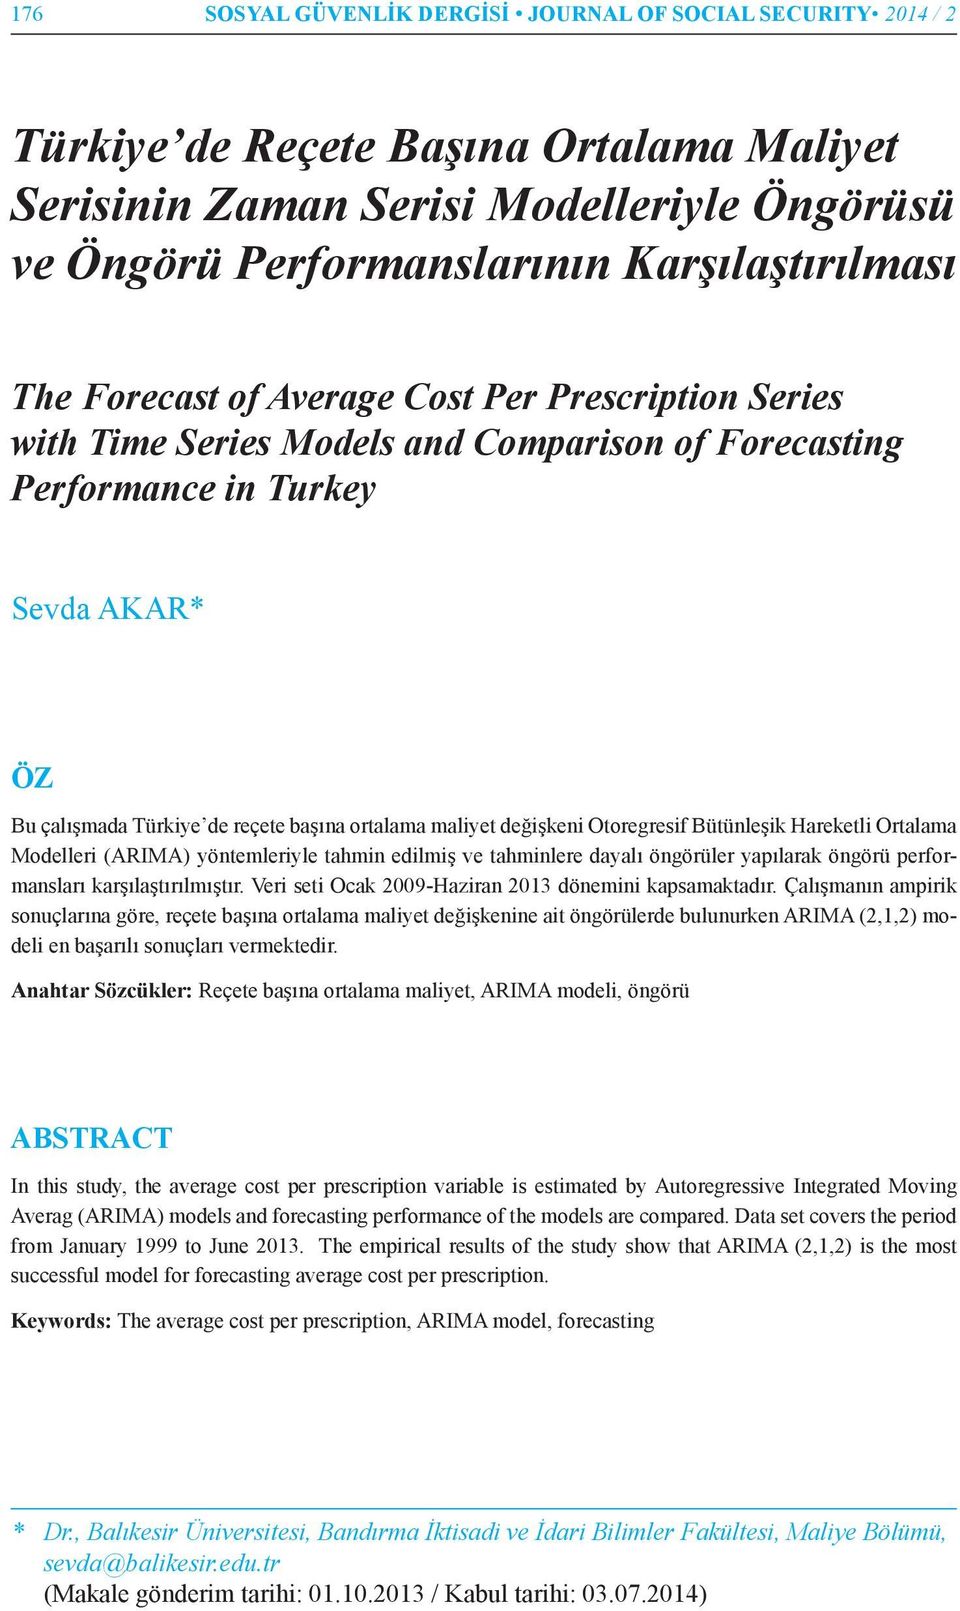 değişkeni Otoregresif Bütünleşik Hareketli Ortalama Modelleri (ARIMA) yöntemleriyle tahmin edilmiş ve tahminlere dayalı öngörüler yapılarak öngörü performansları karşılaştırılmıştır.